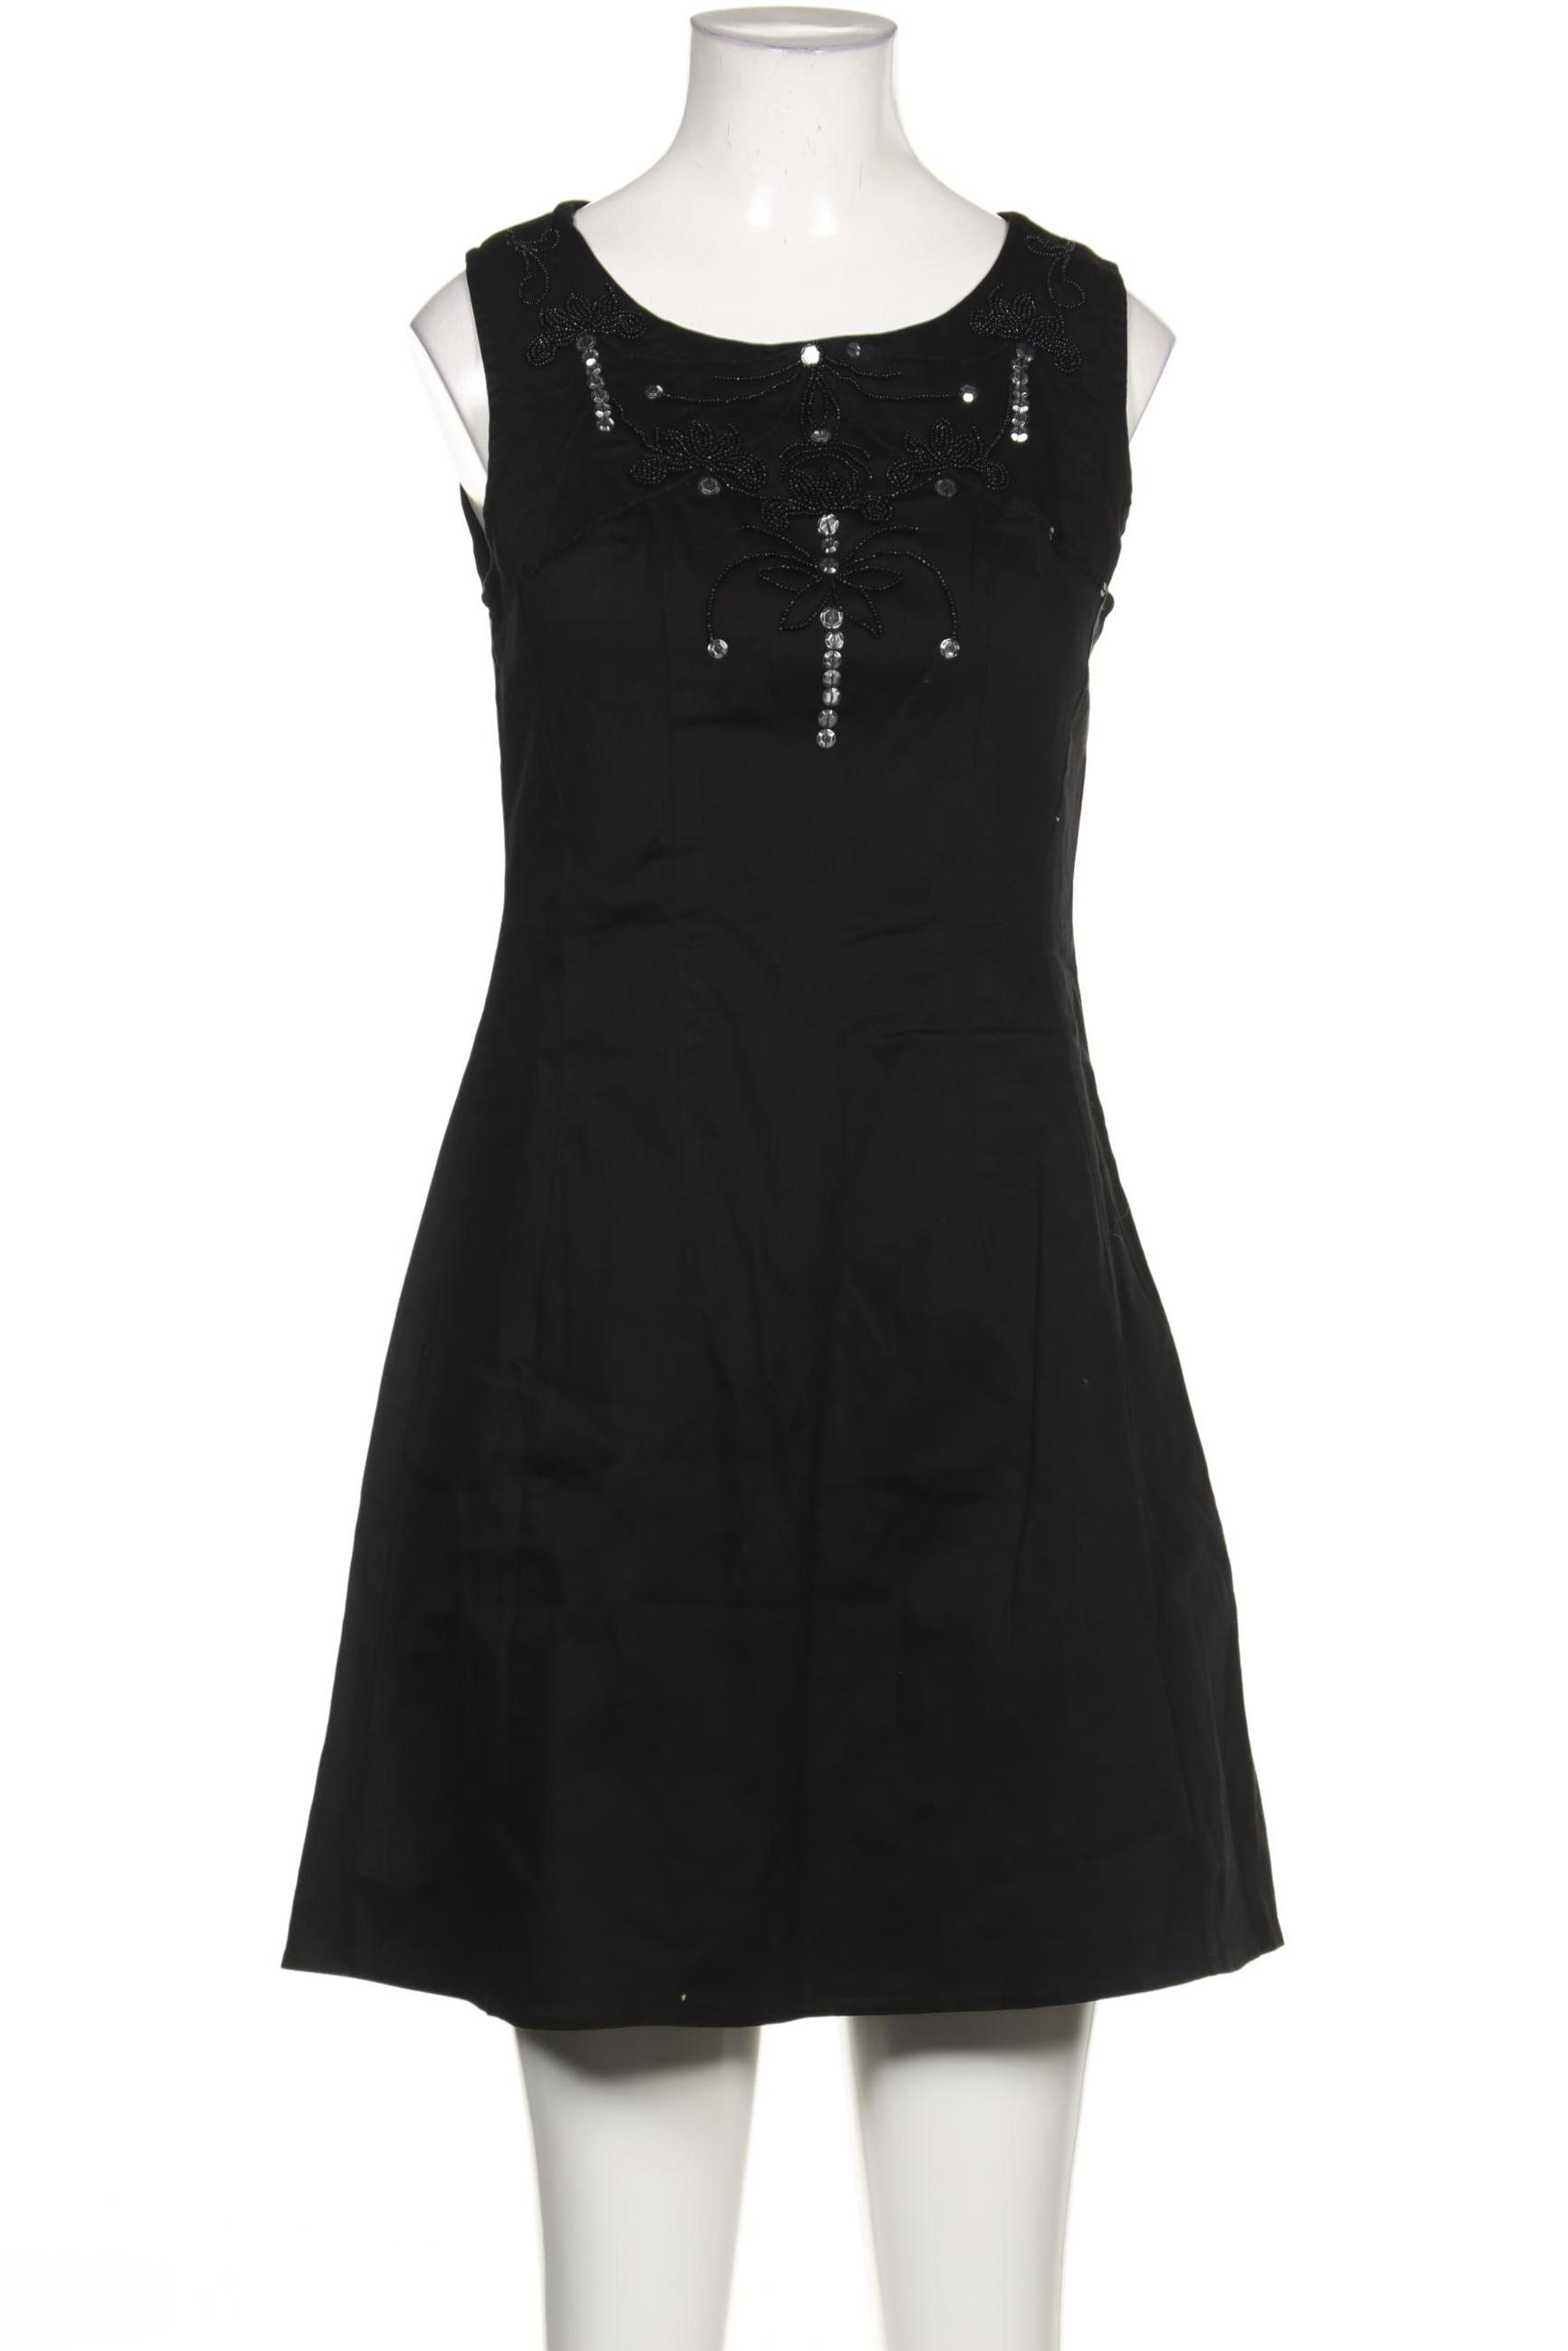 Yumi Damen Kleid, schwarz, Gr. 40 von Yumi